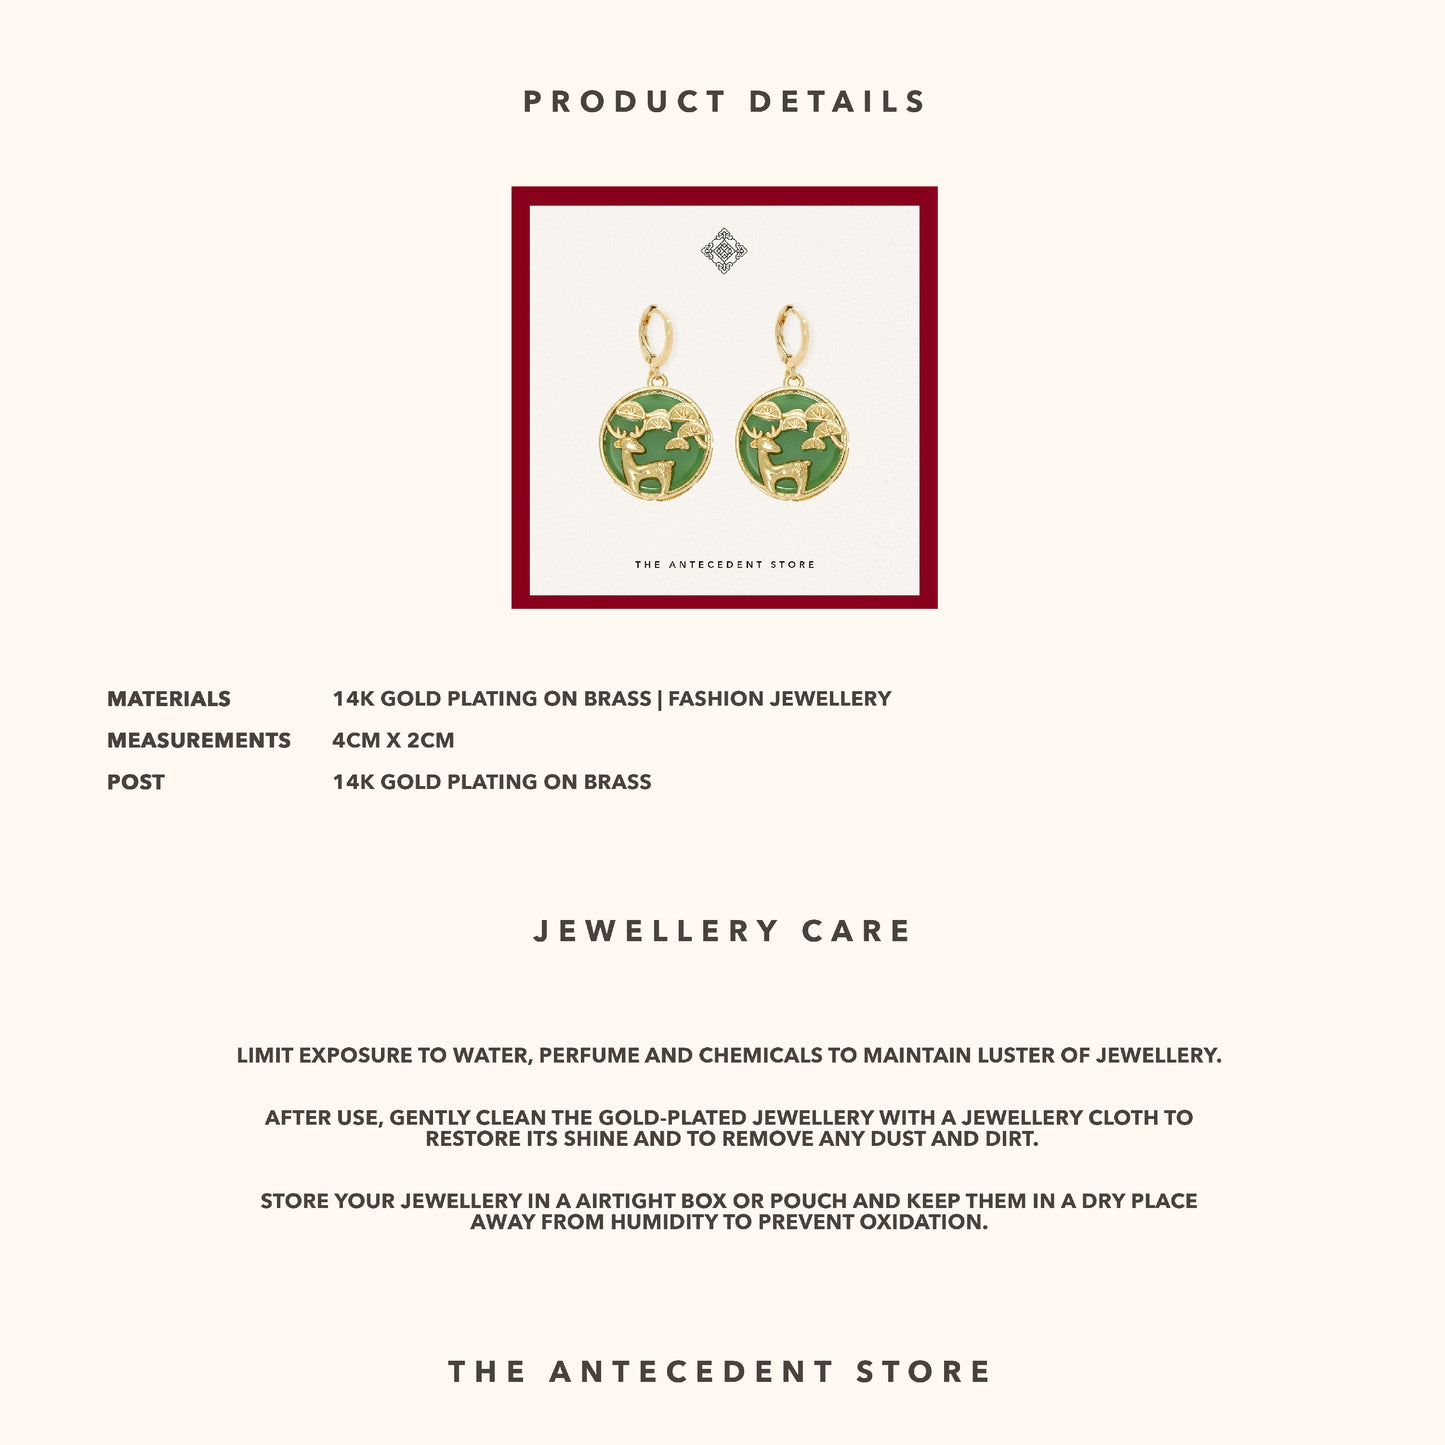 Oriental Motif Earrings - 14K Real Gold Plated Jewelry